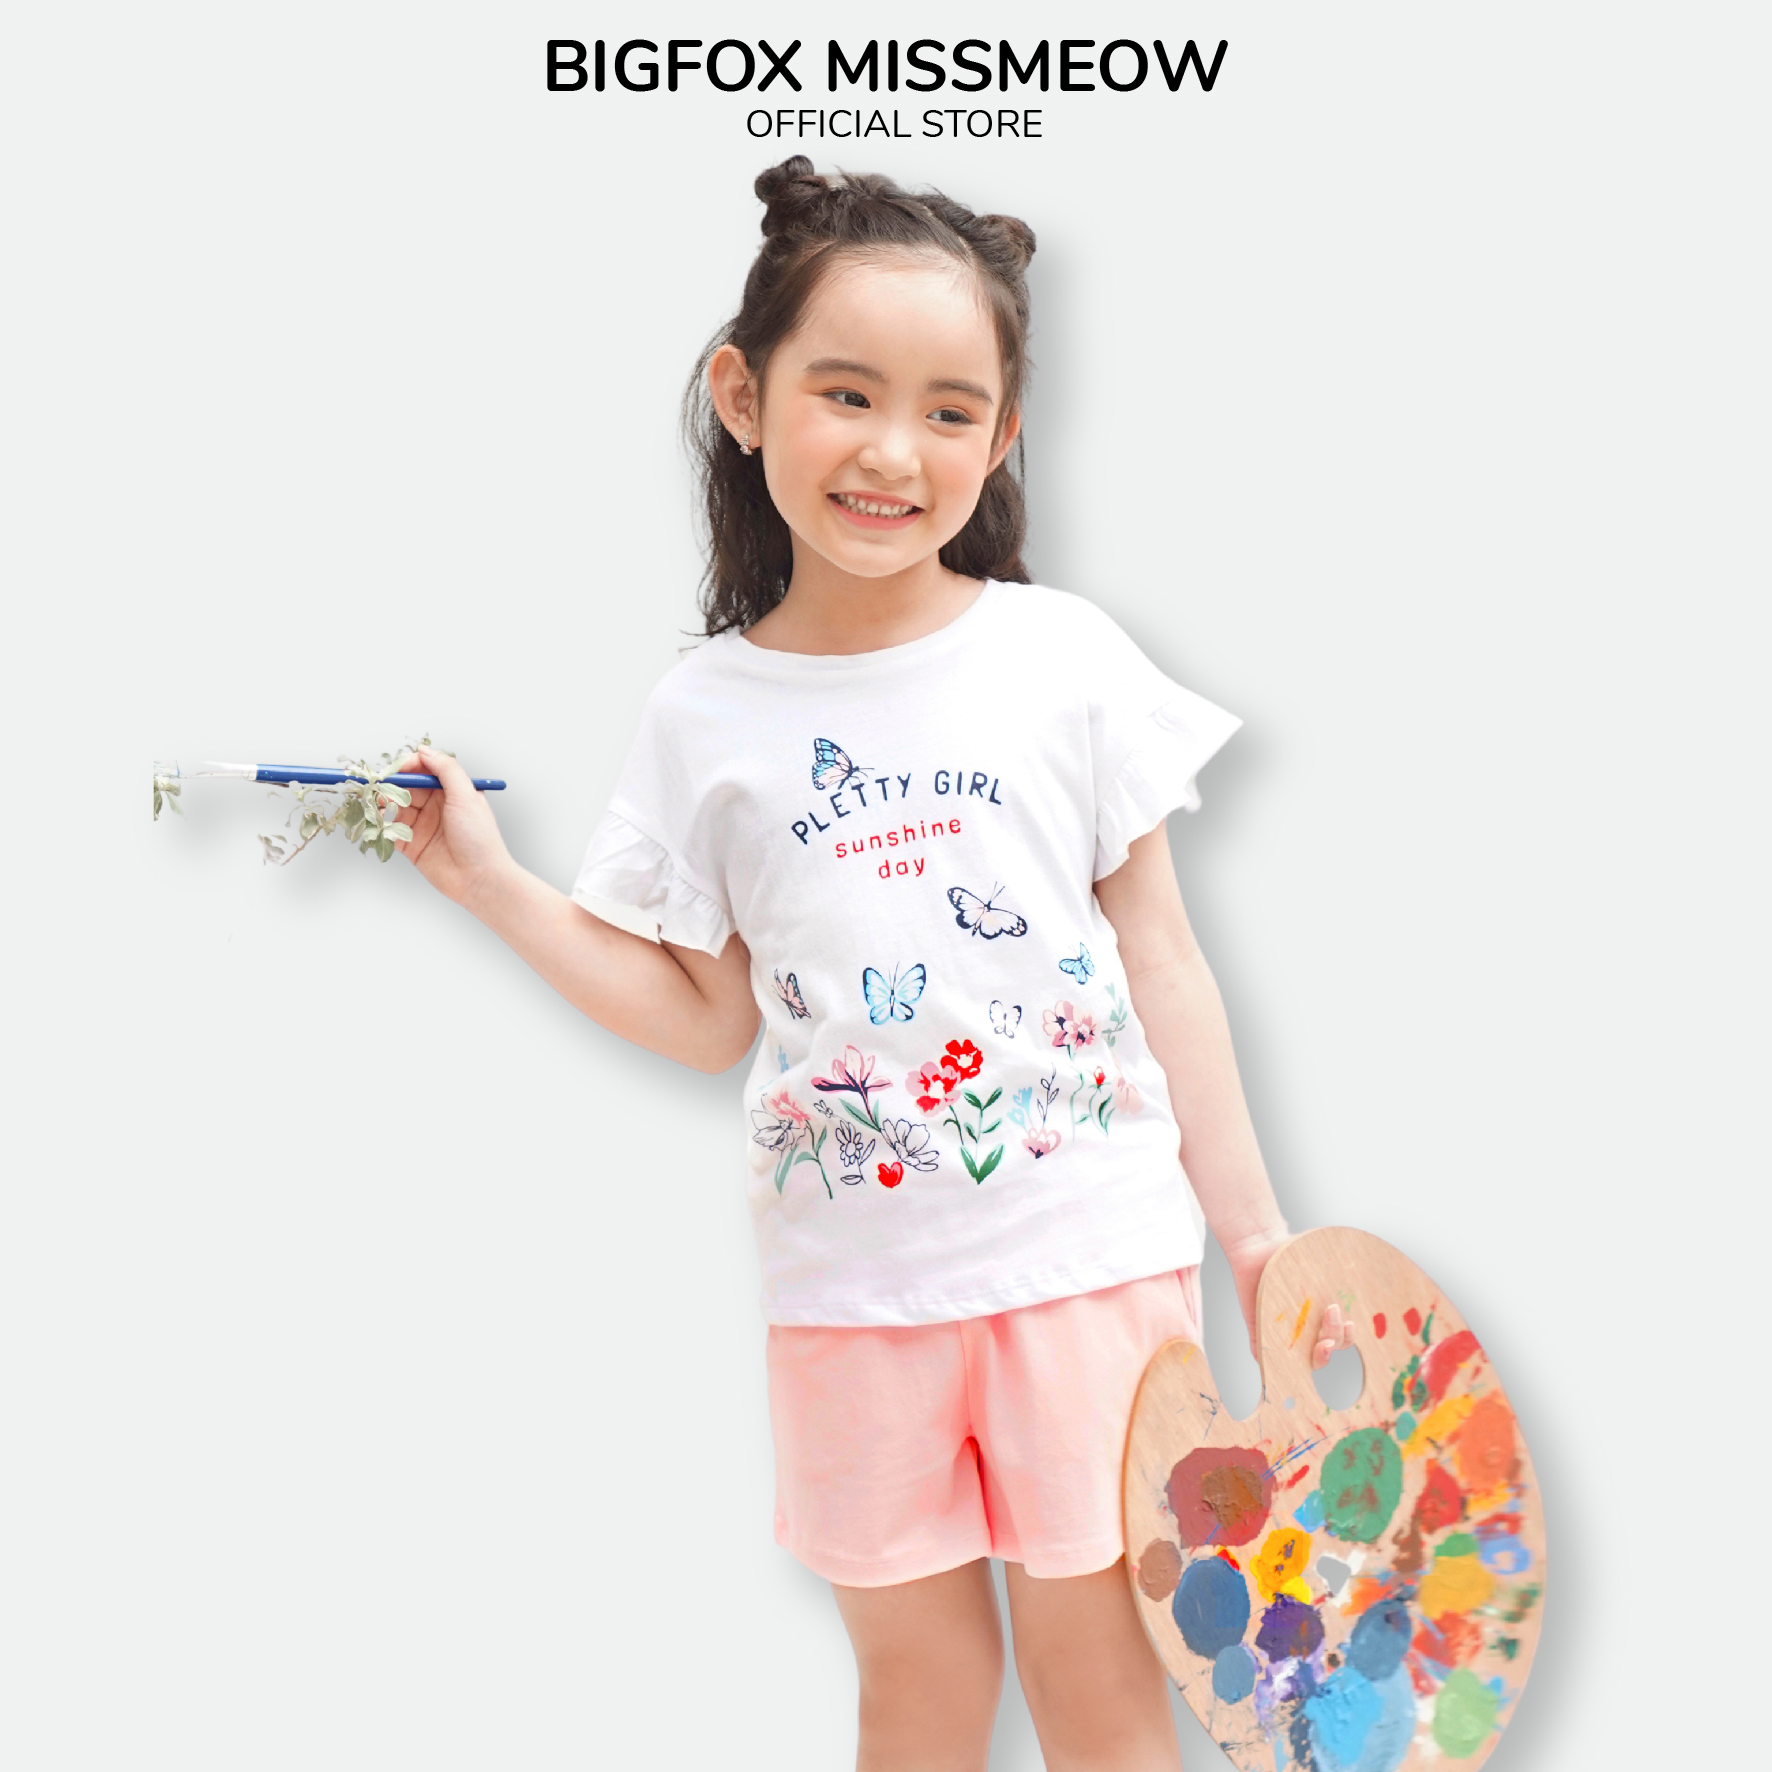 Đồ Bộ Bé Gái Size Đại Bigfox Miss Meow Mùa Hè Kiểu Hàn Quốc Vải Cotton Mềm Mại In Pletty Girl Dễ Thương Size 3-11 Tuổi 30kg 40kg